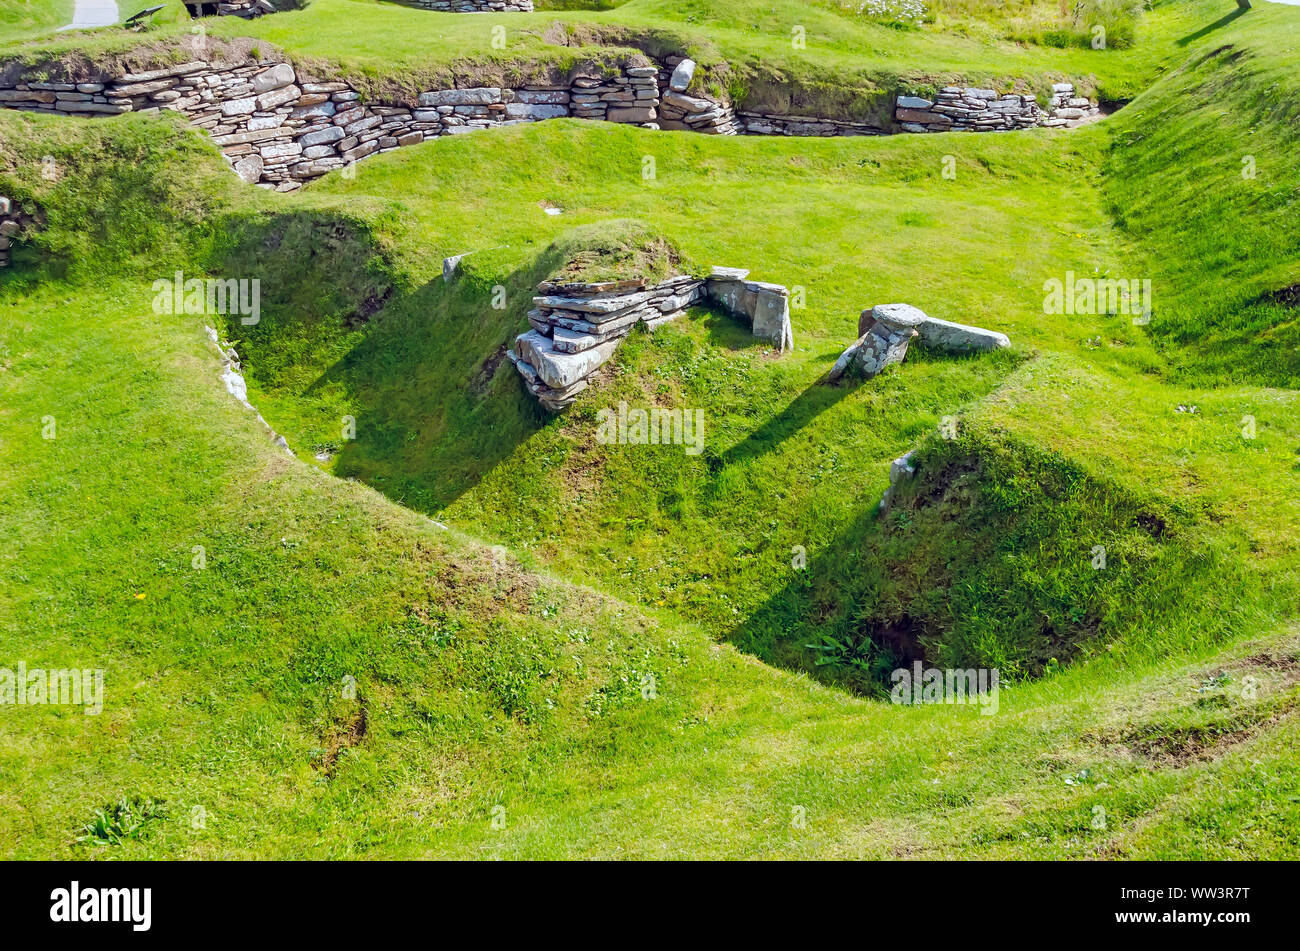 Skara Brae esbozos de una estructura de una aldea neolitihic que datan del 3100 a.c. descubiertos por una tormenta. Foto de stock